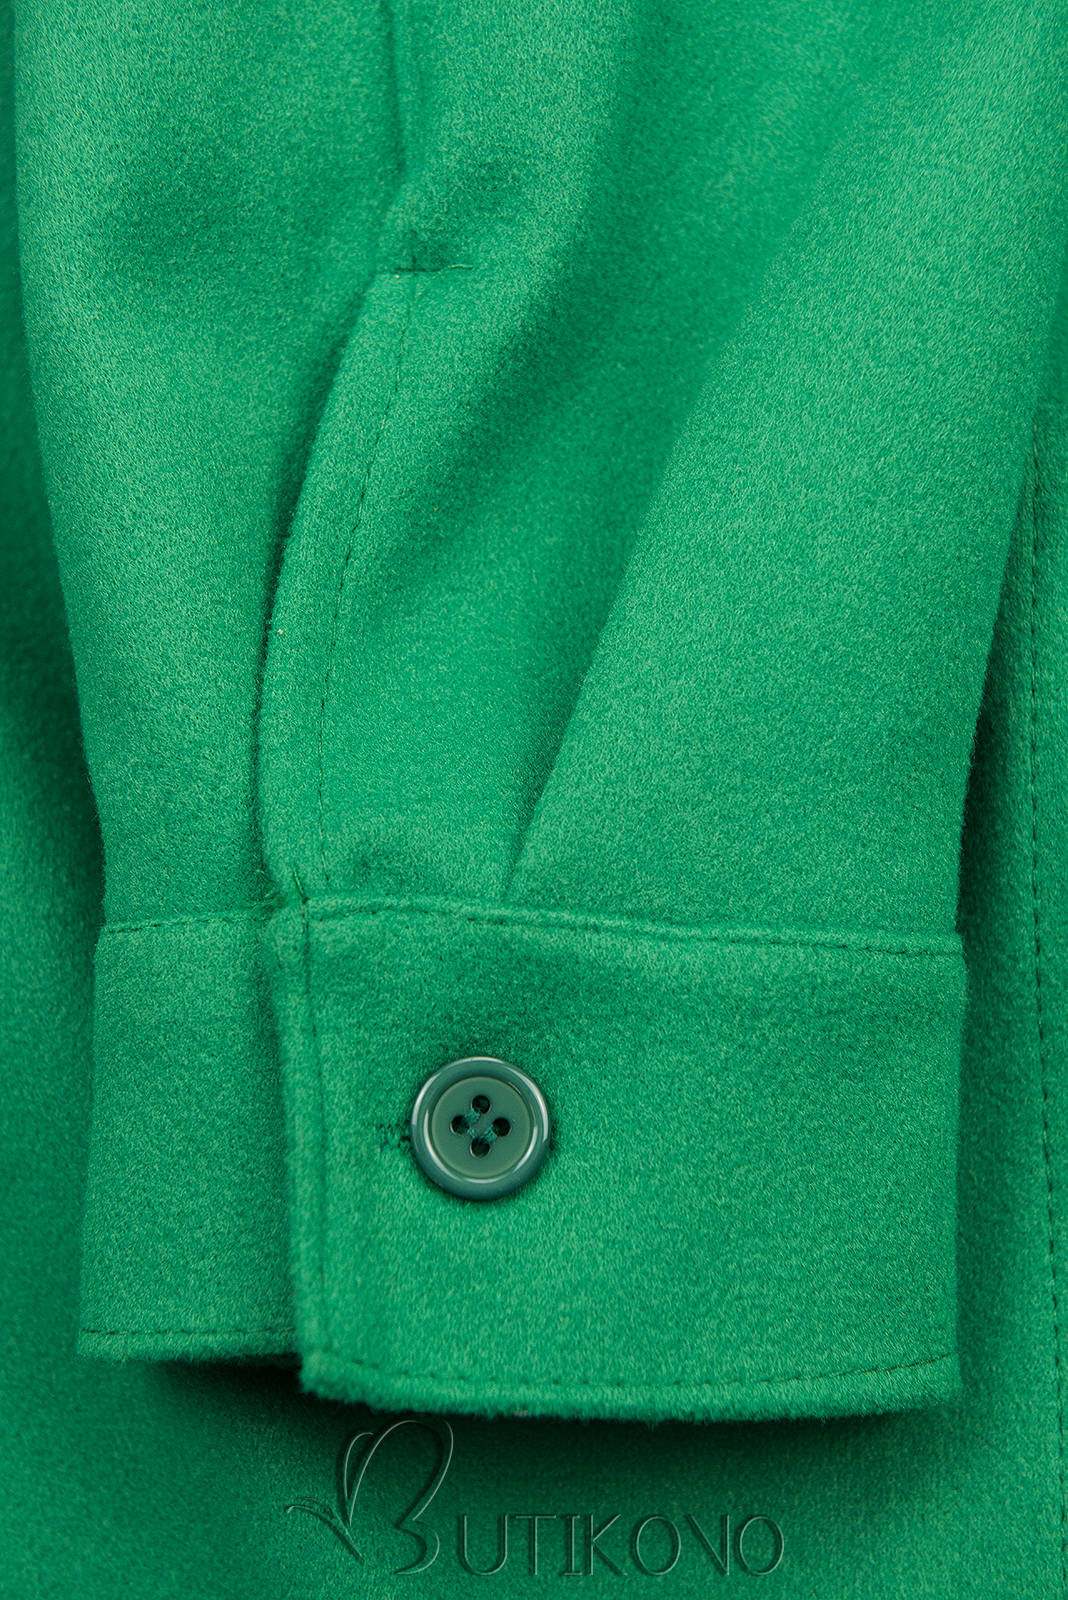 Zelený lehký plášť